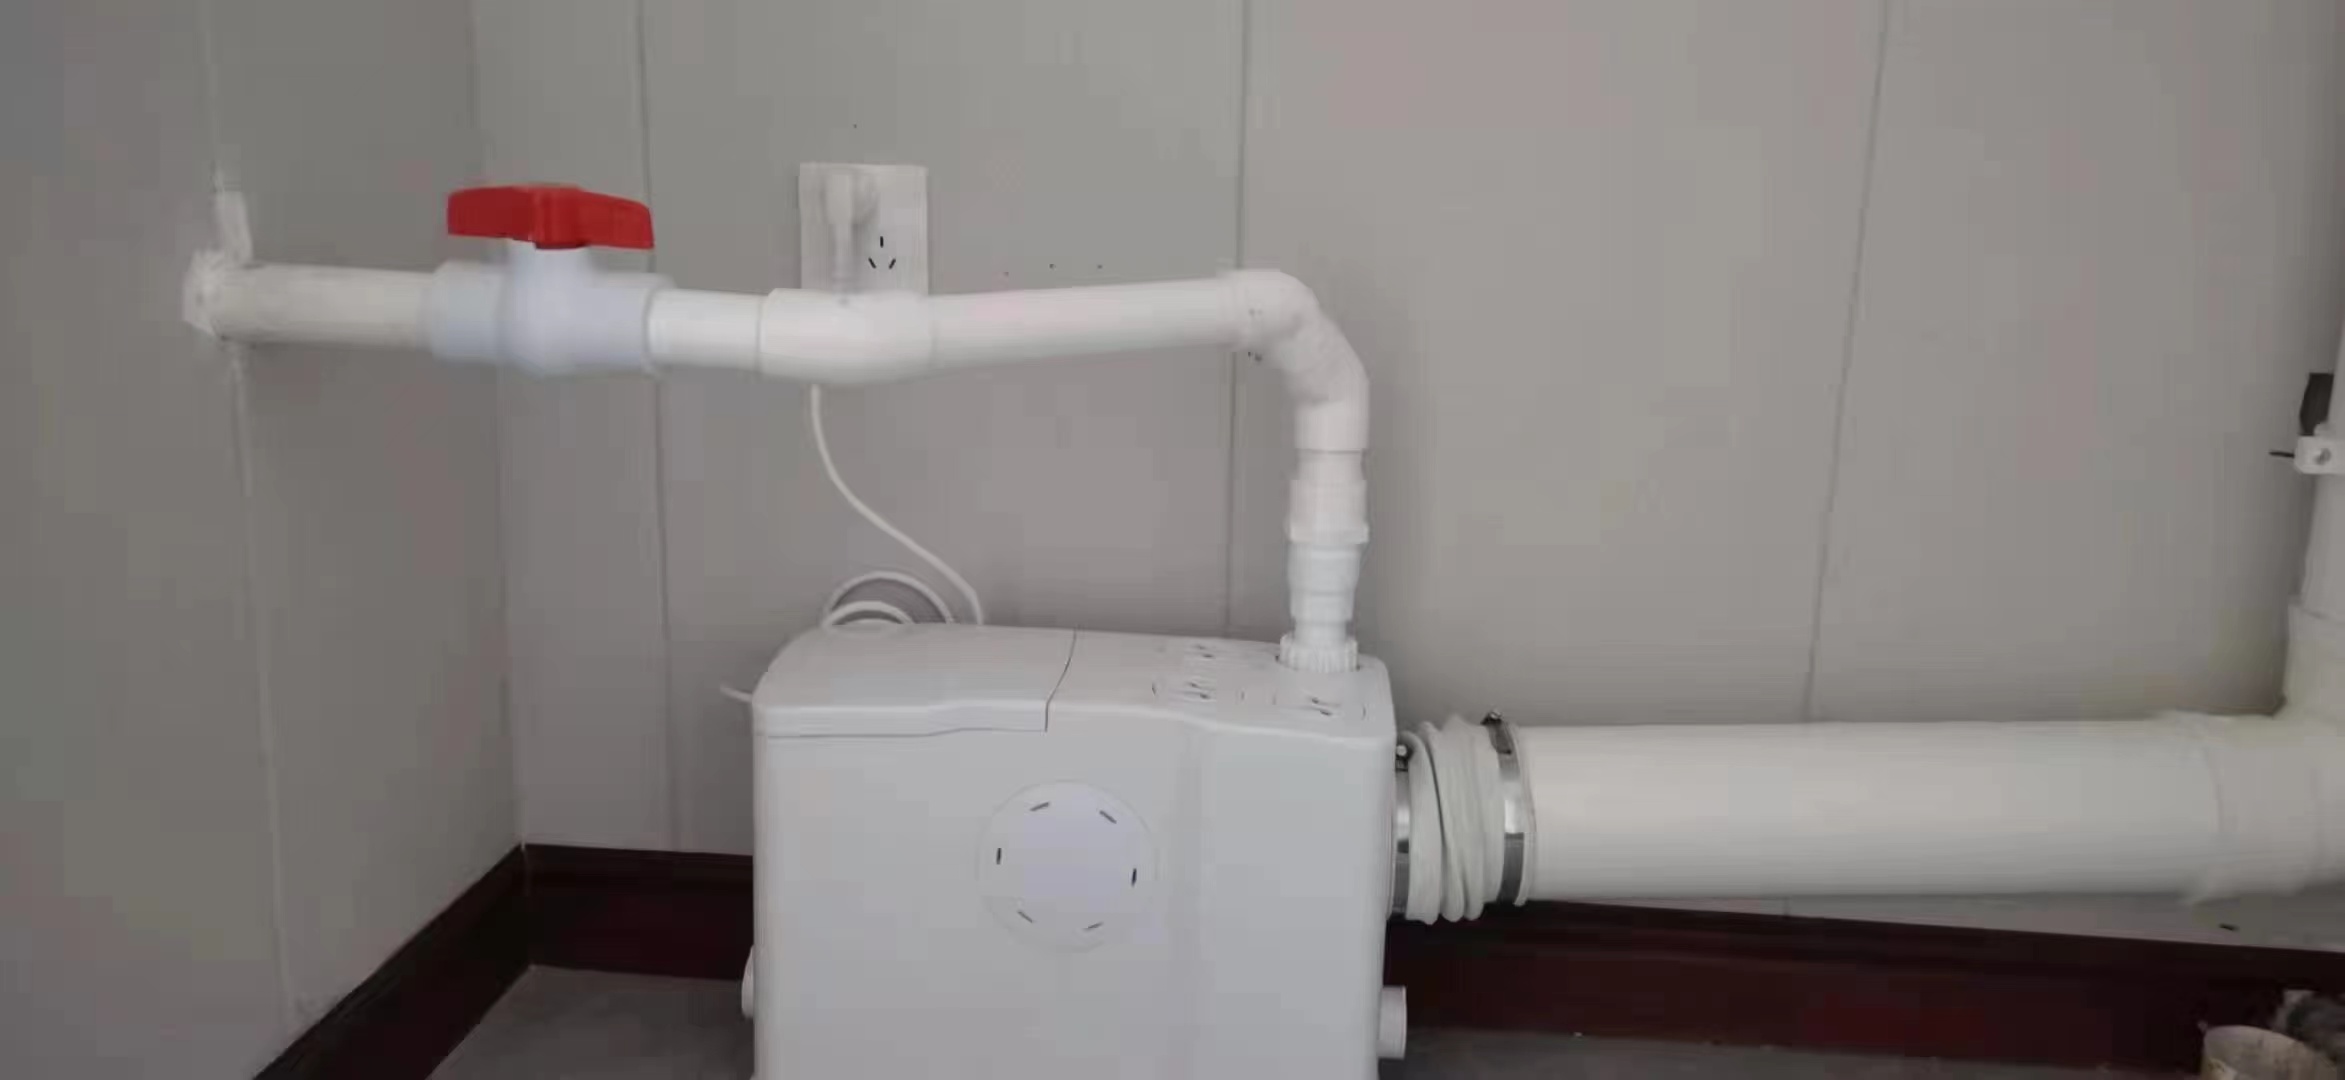 Gerios侧排式卫生间污水提升器